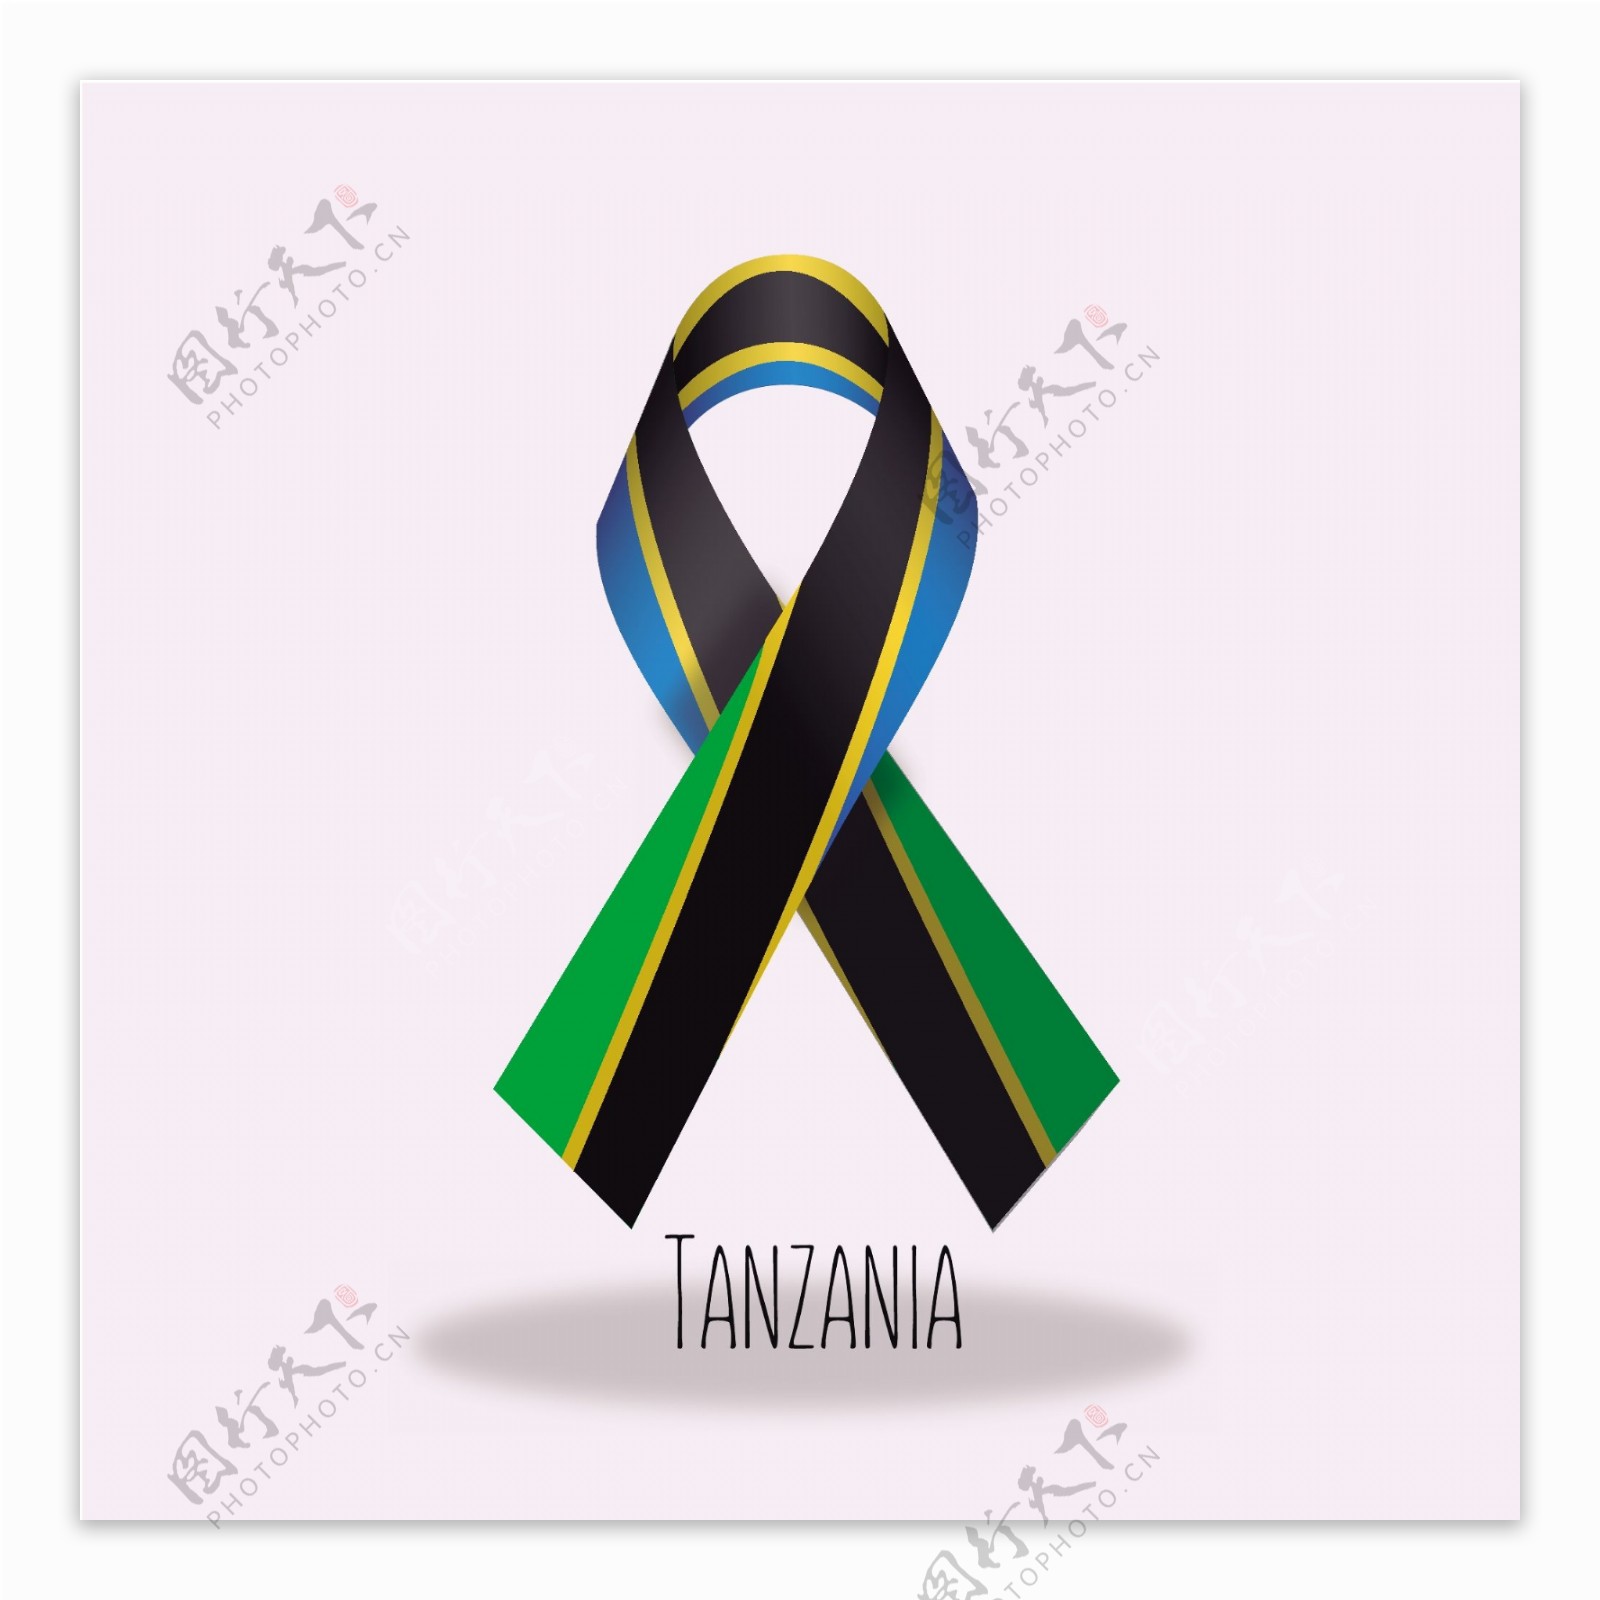 坦桑尼亚国旗丝带设计矢量素材